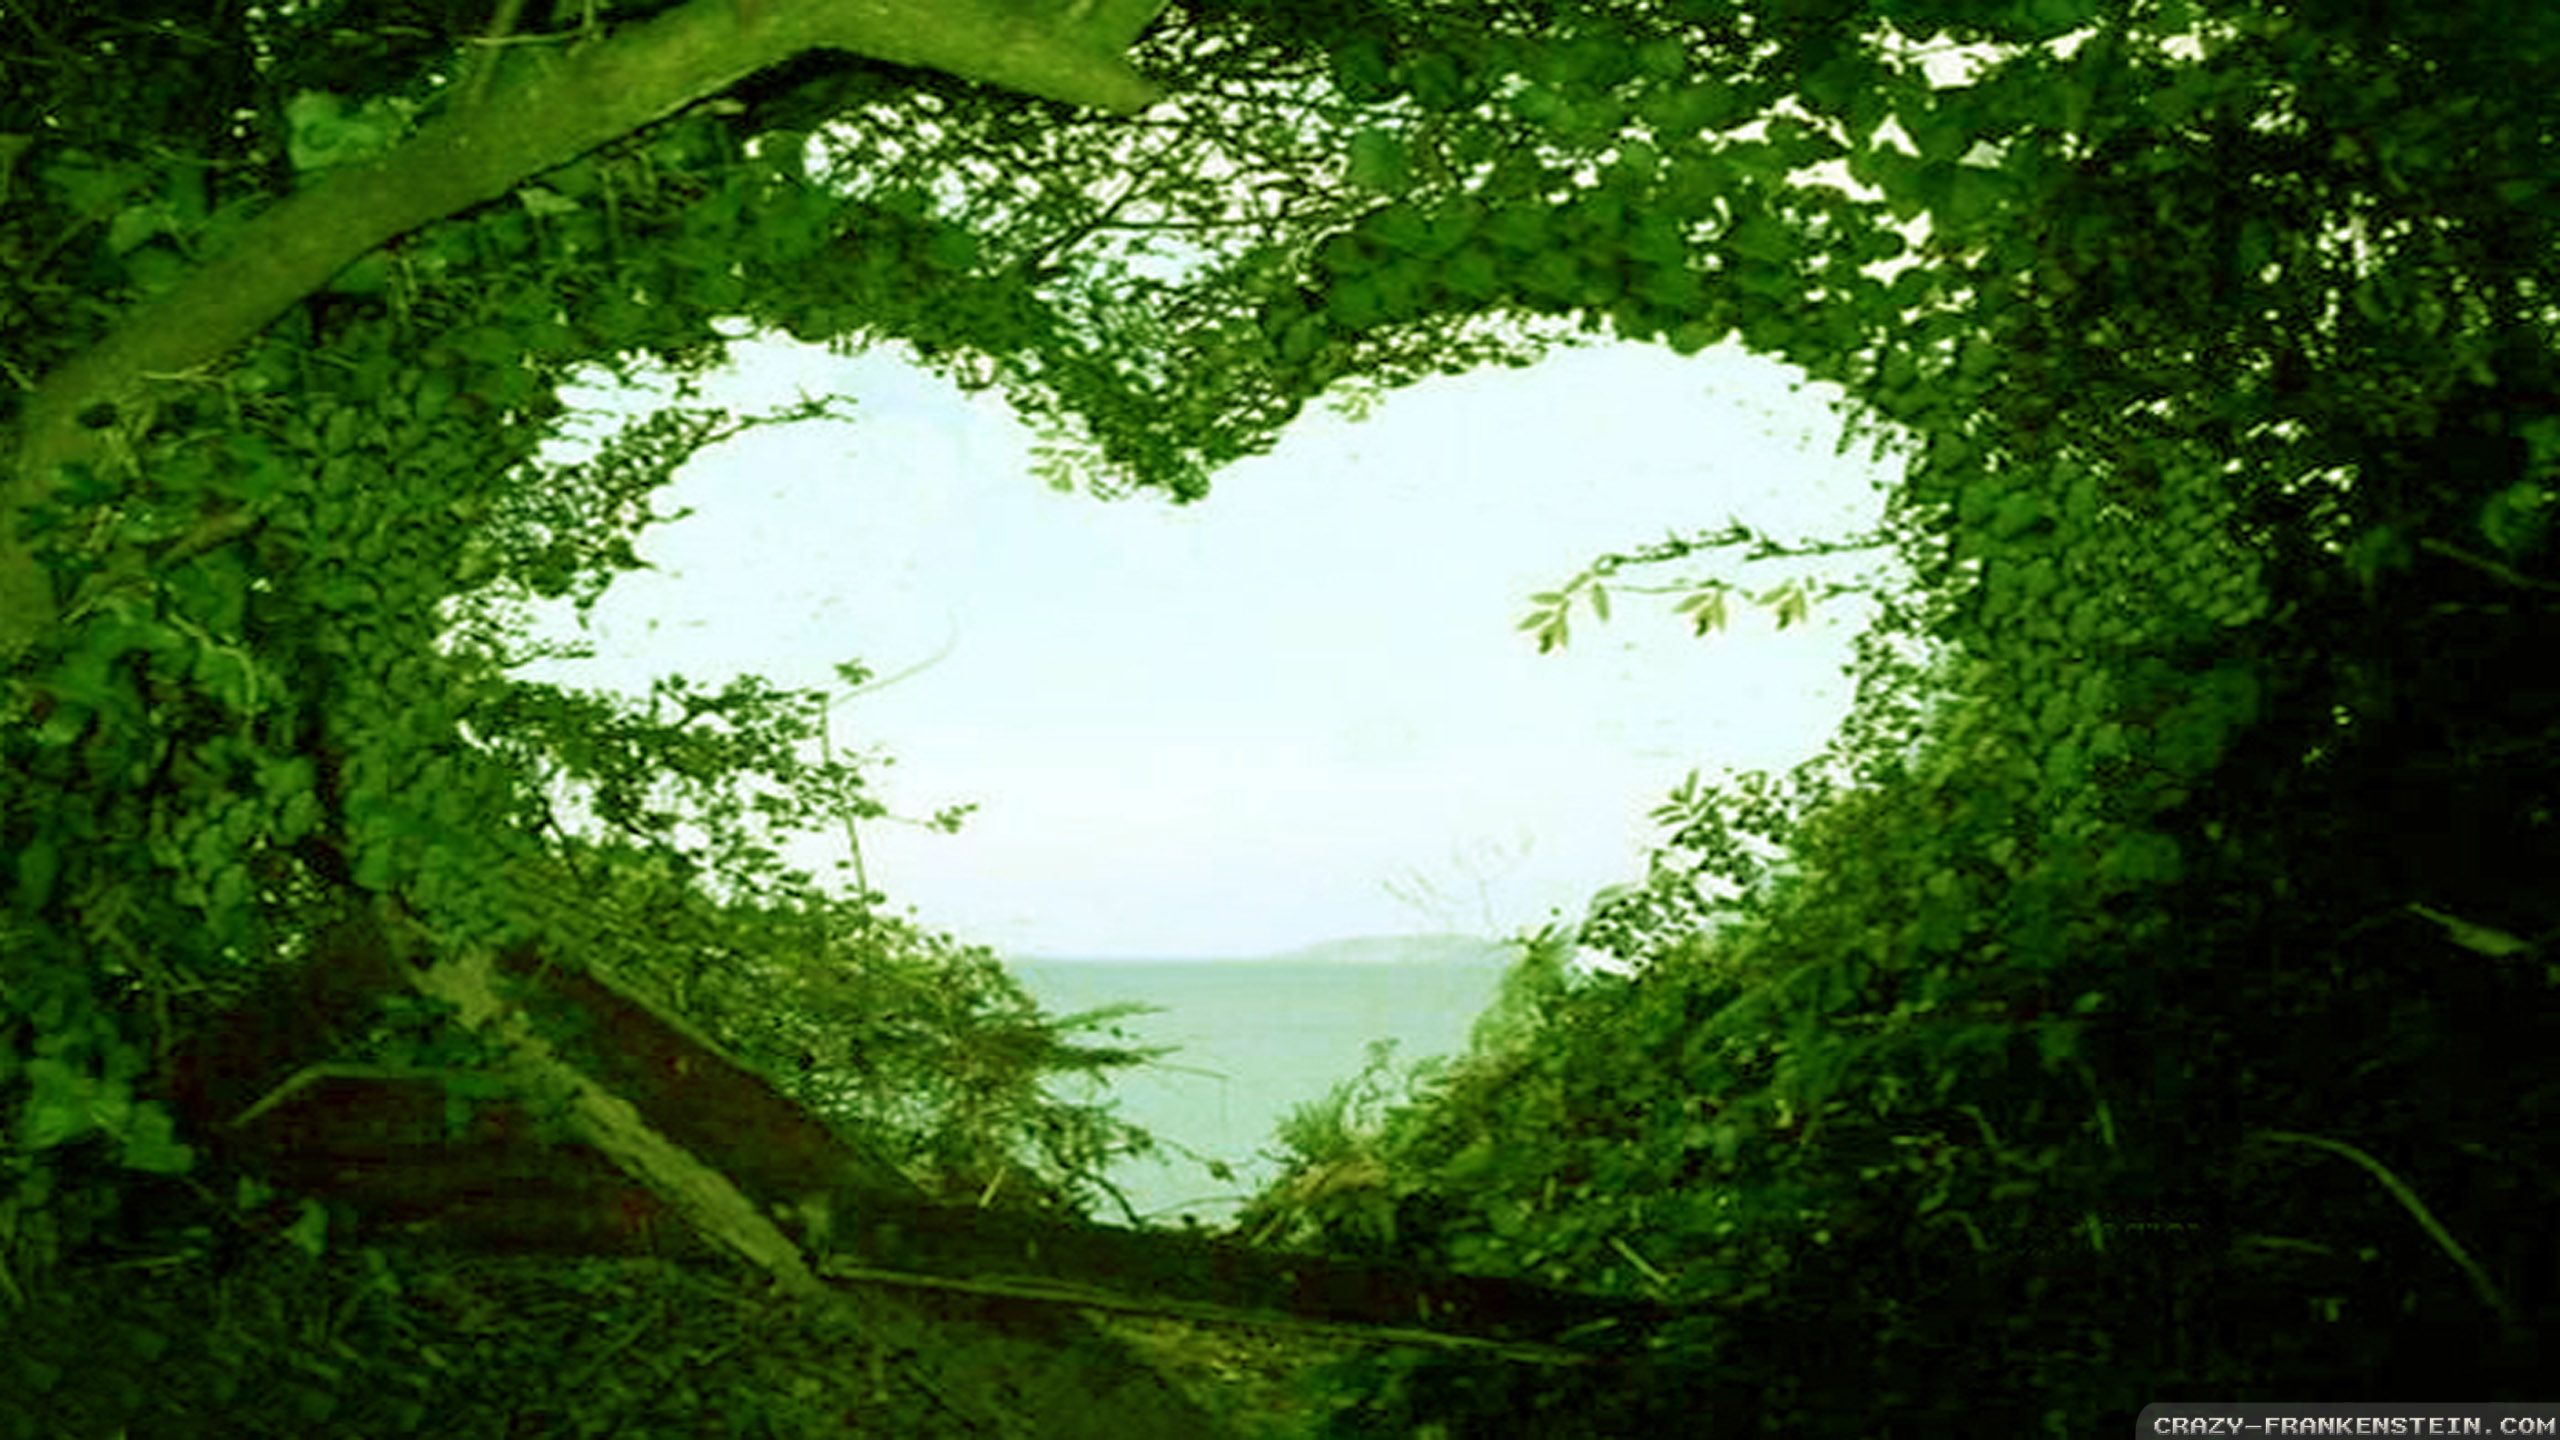 Beautiful love nature wallpaper hd desktop wallpapers love nature